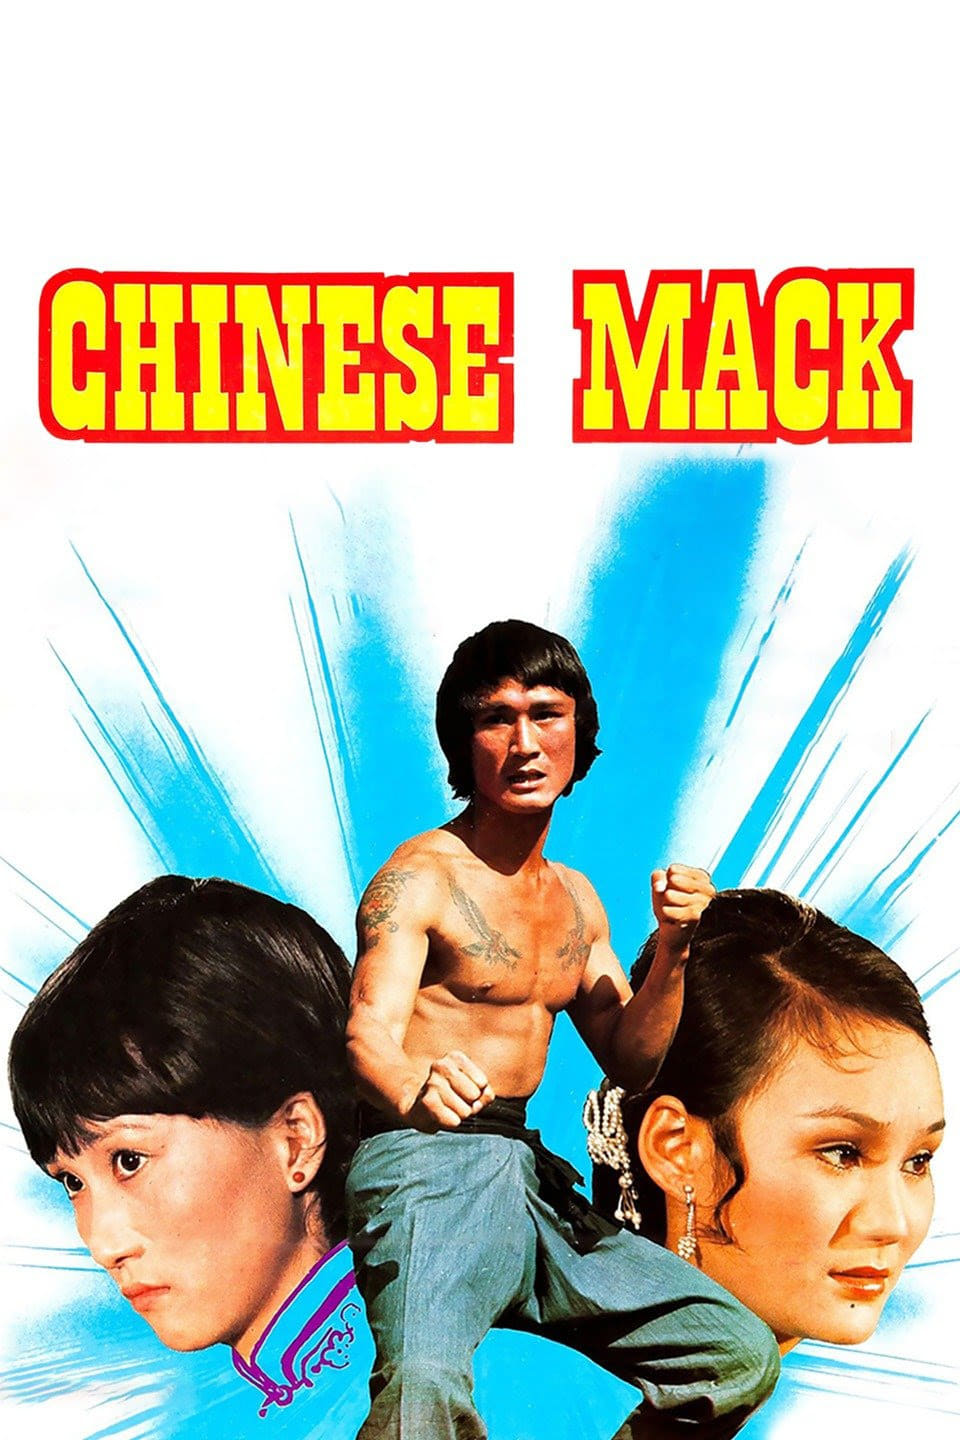 The Chinese Mack